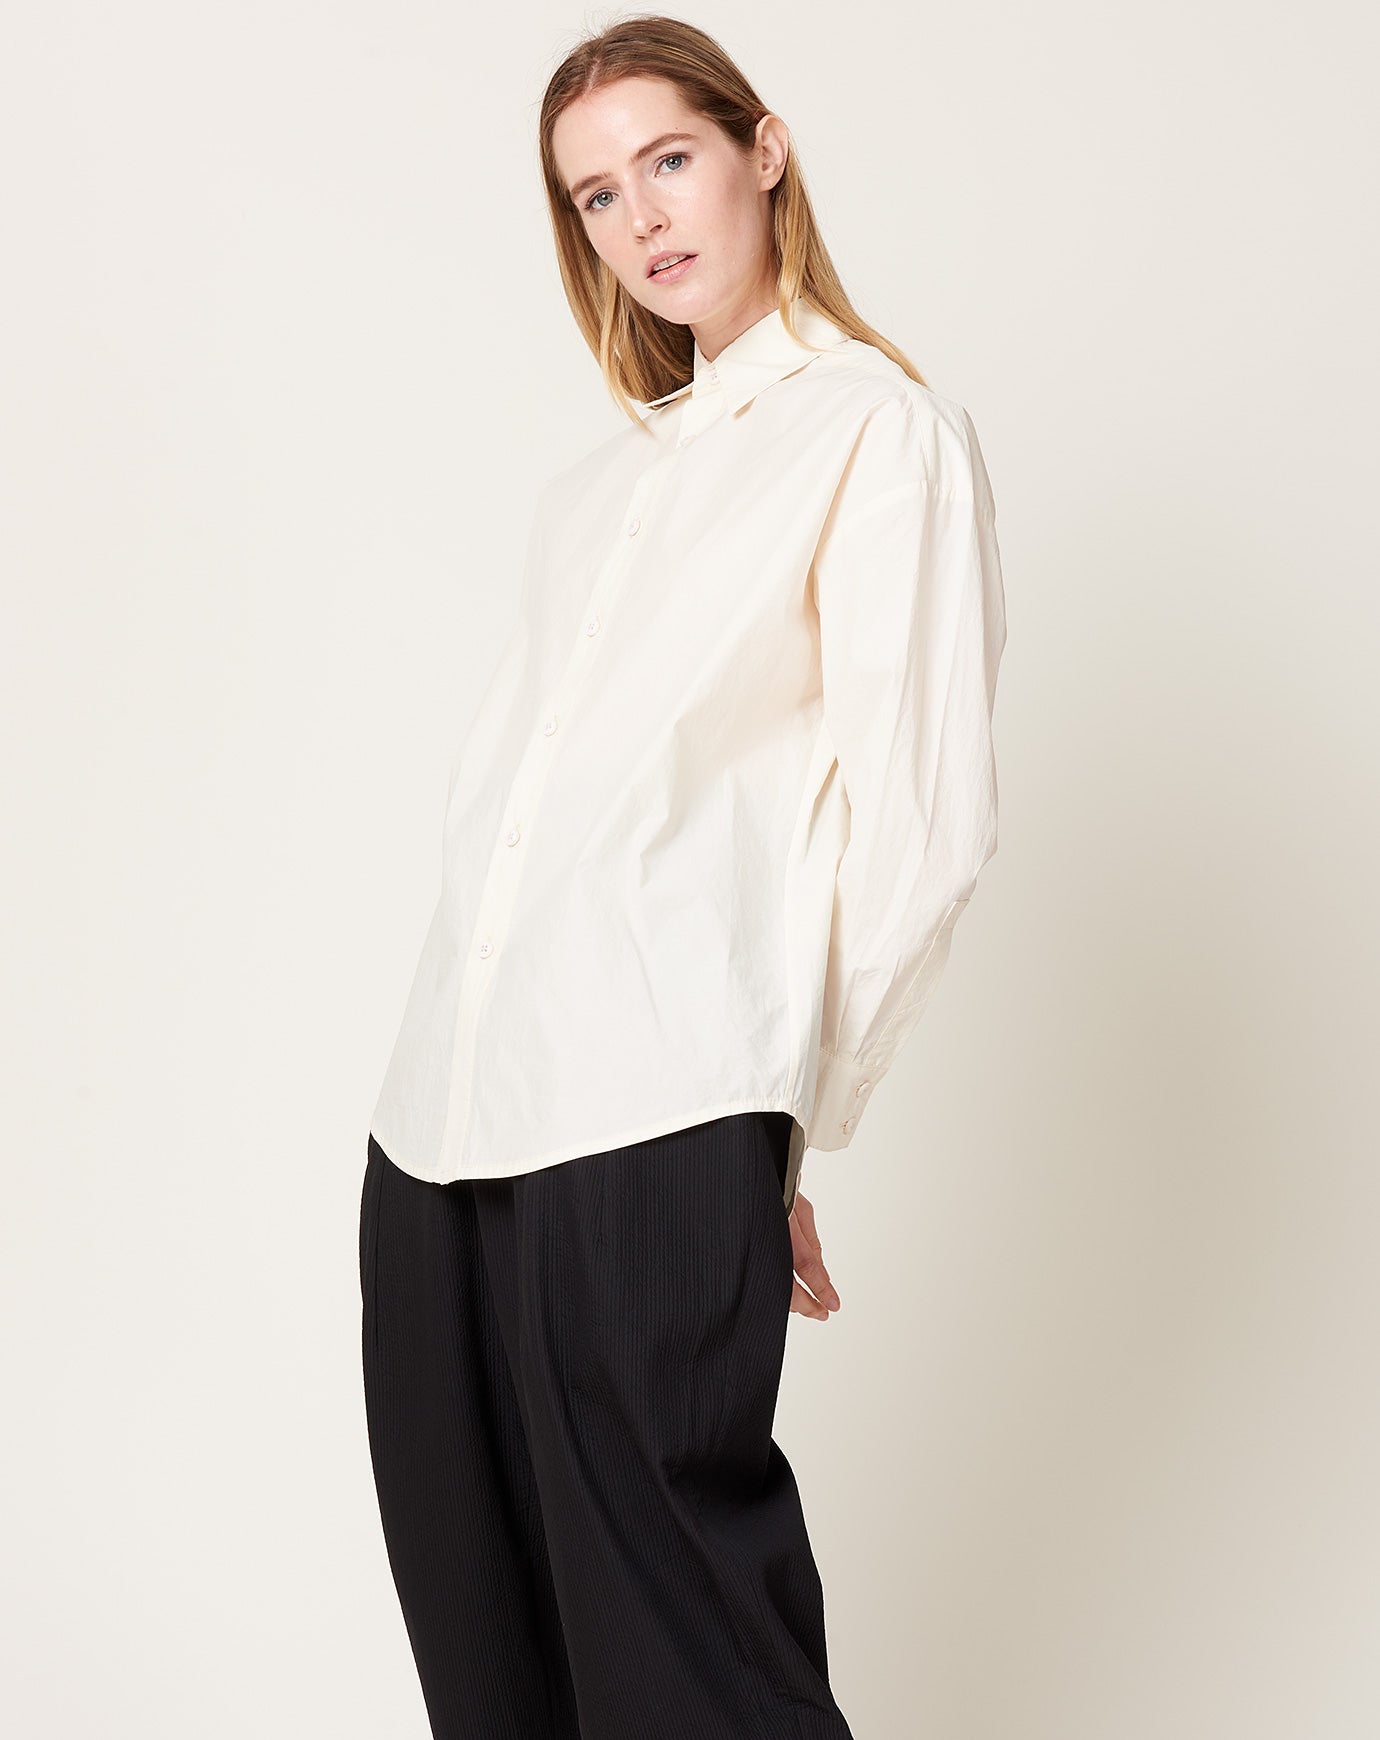 7115 by Szeki Papery Dolman Shirt in Off White